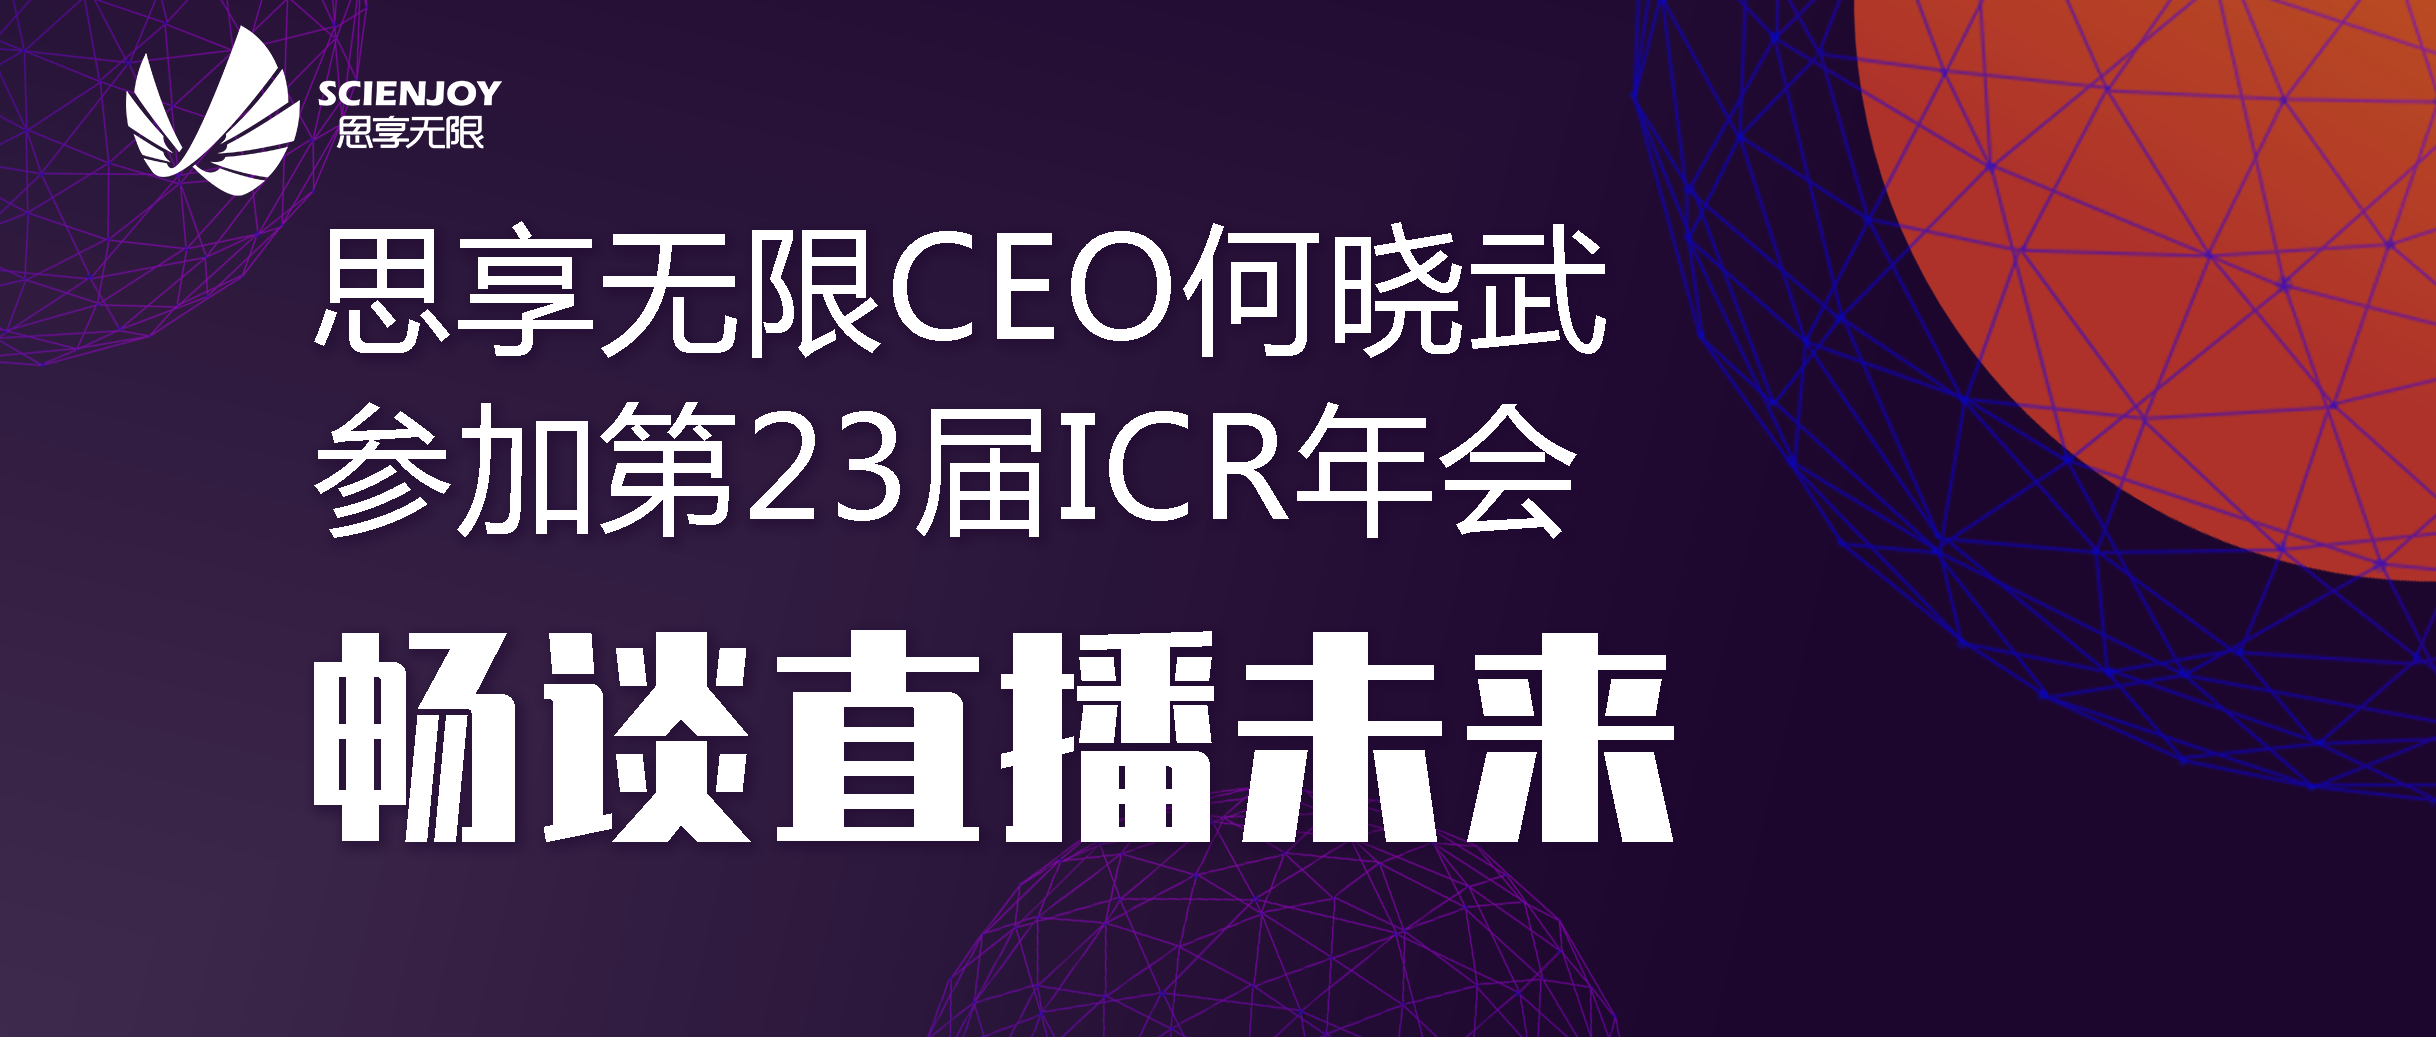 思享无限CEO何晓武参加第23届ICR年会畅谈直播未来